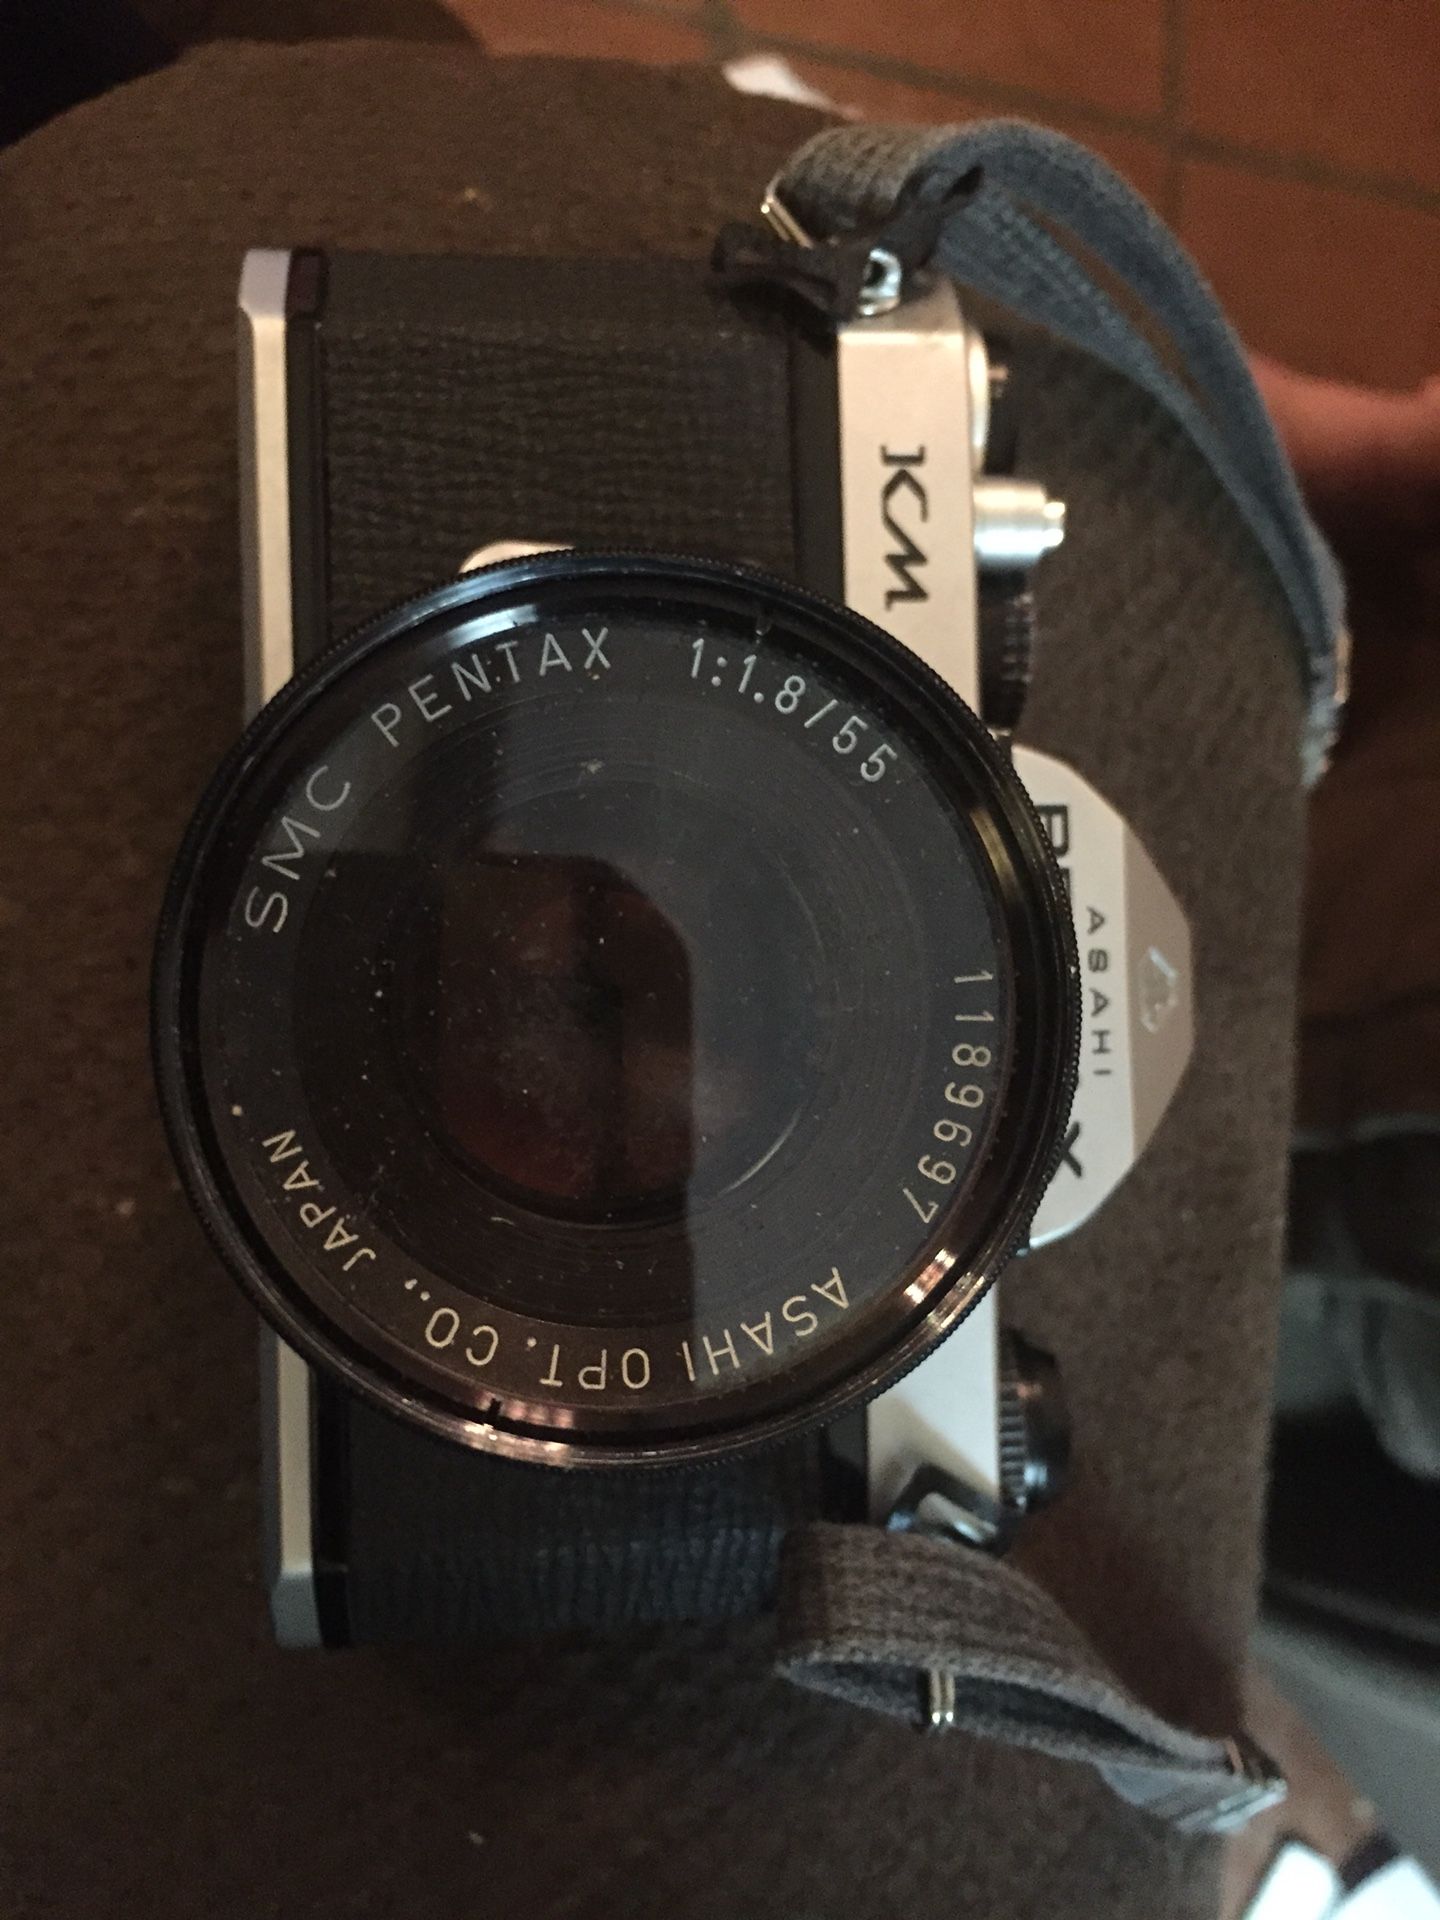 Pentax Asahi 35mm camera